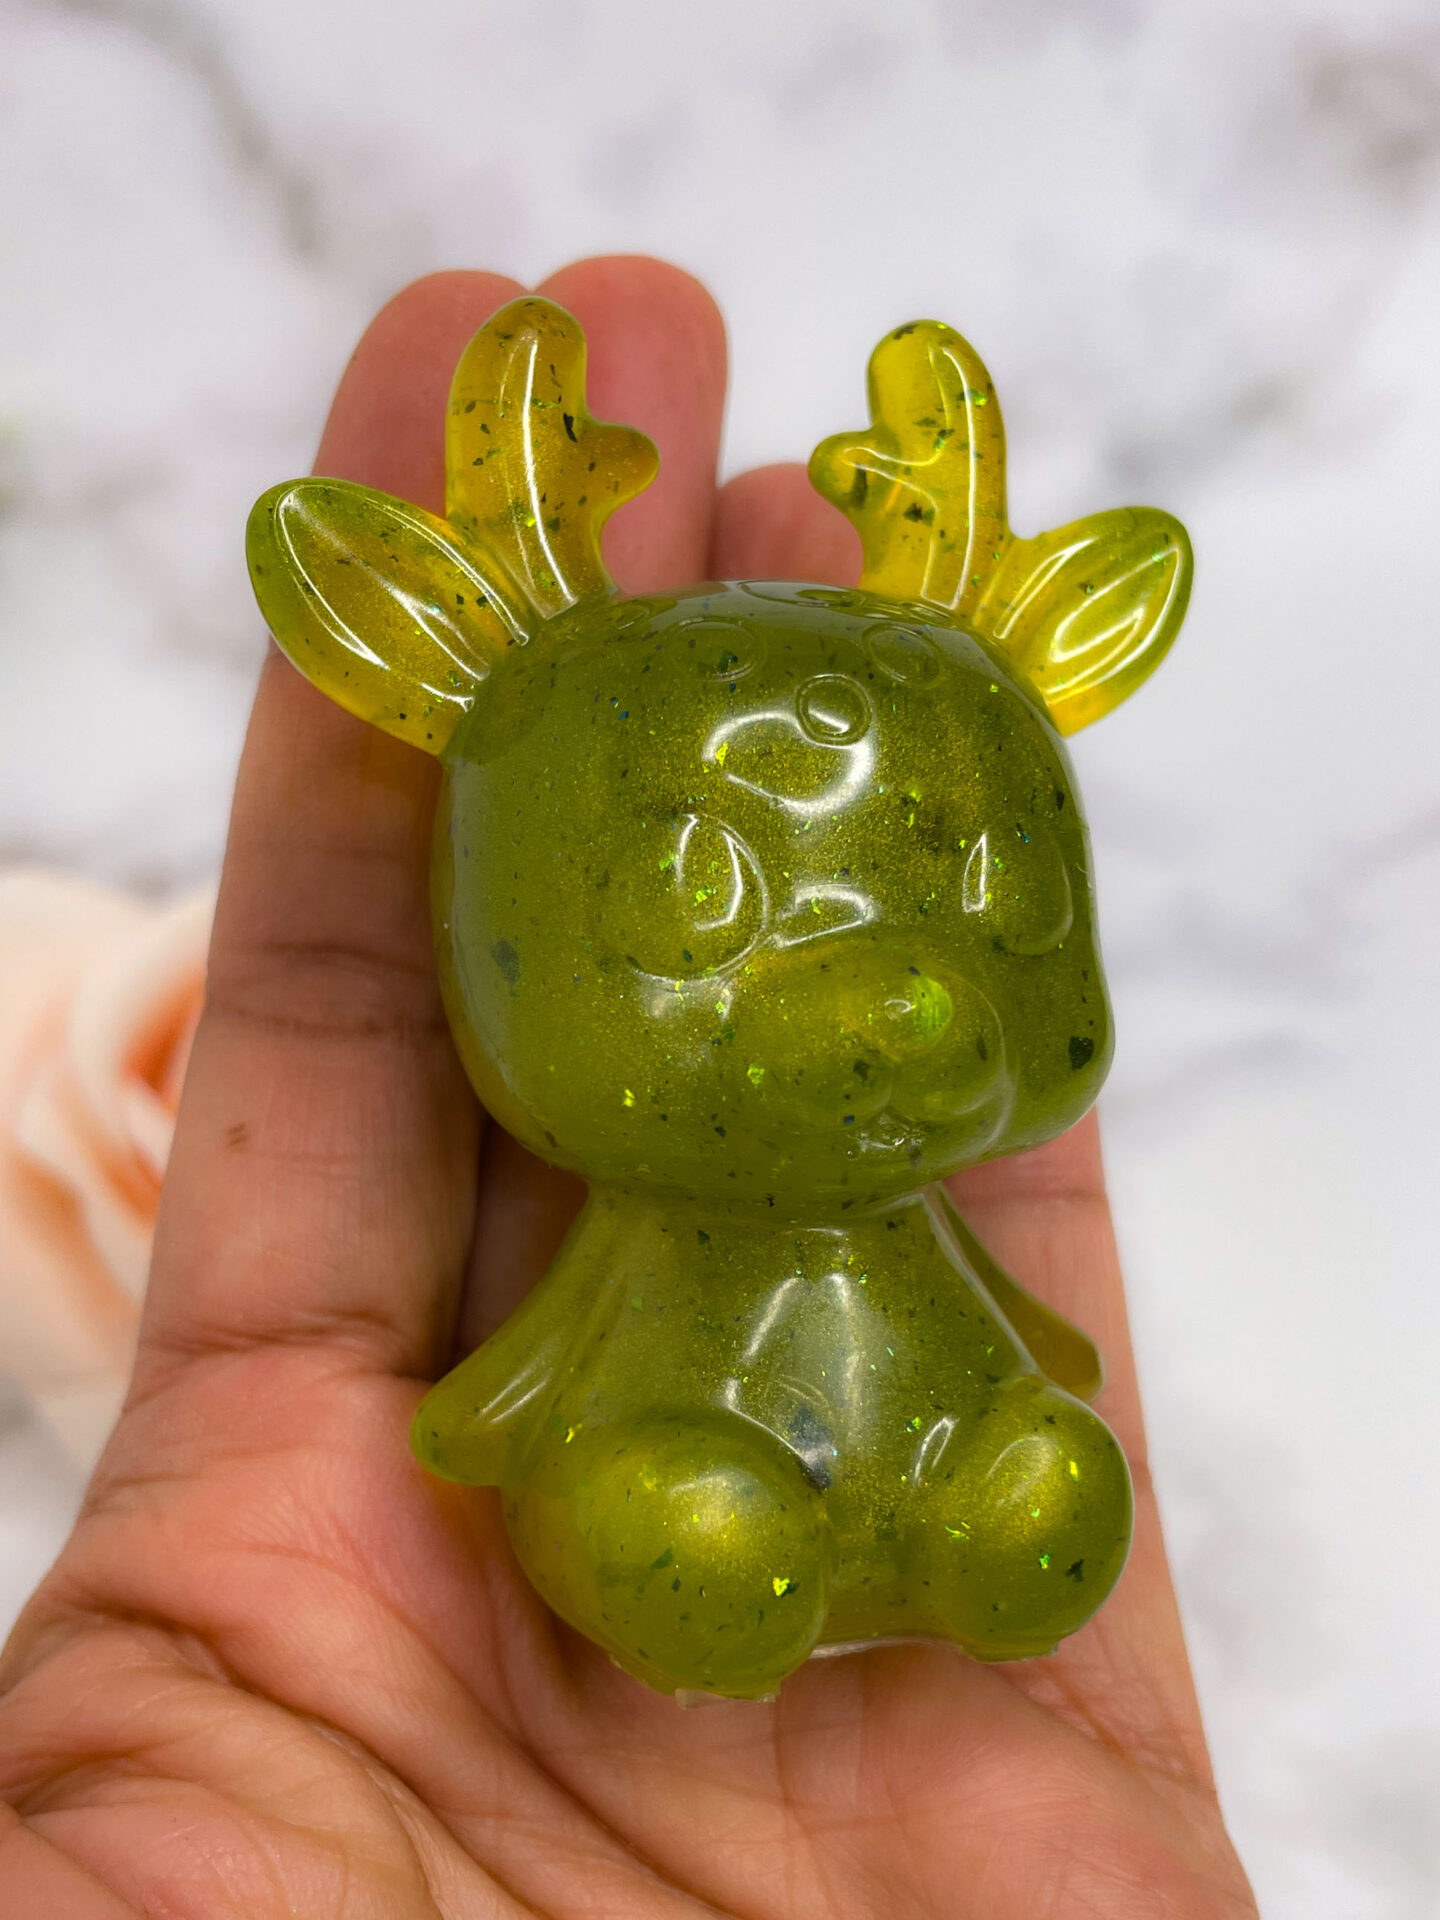 Figurine Cerf - vert clair - boutique idées cadeaux - boutique en ligne - création française et artisanale.